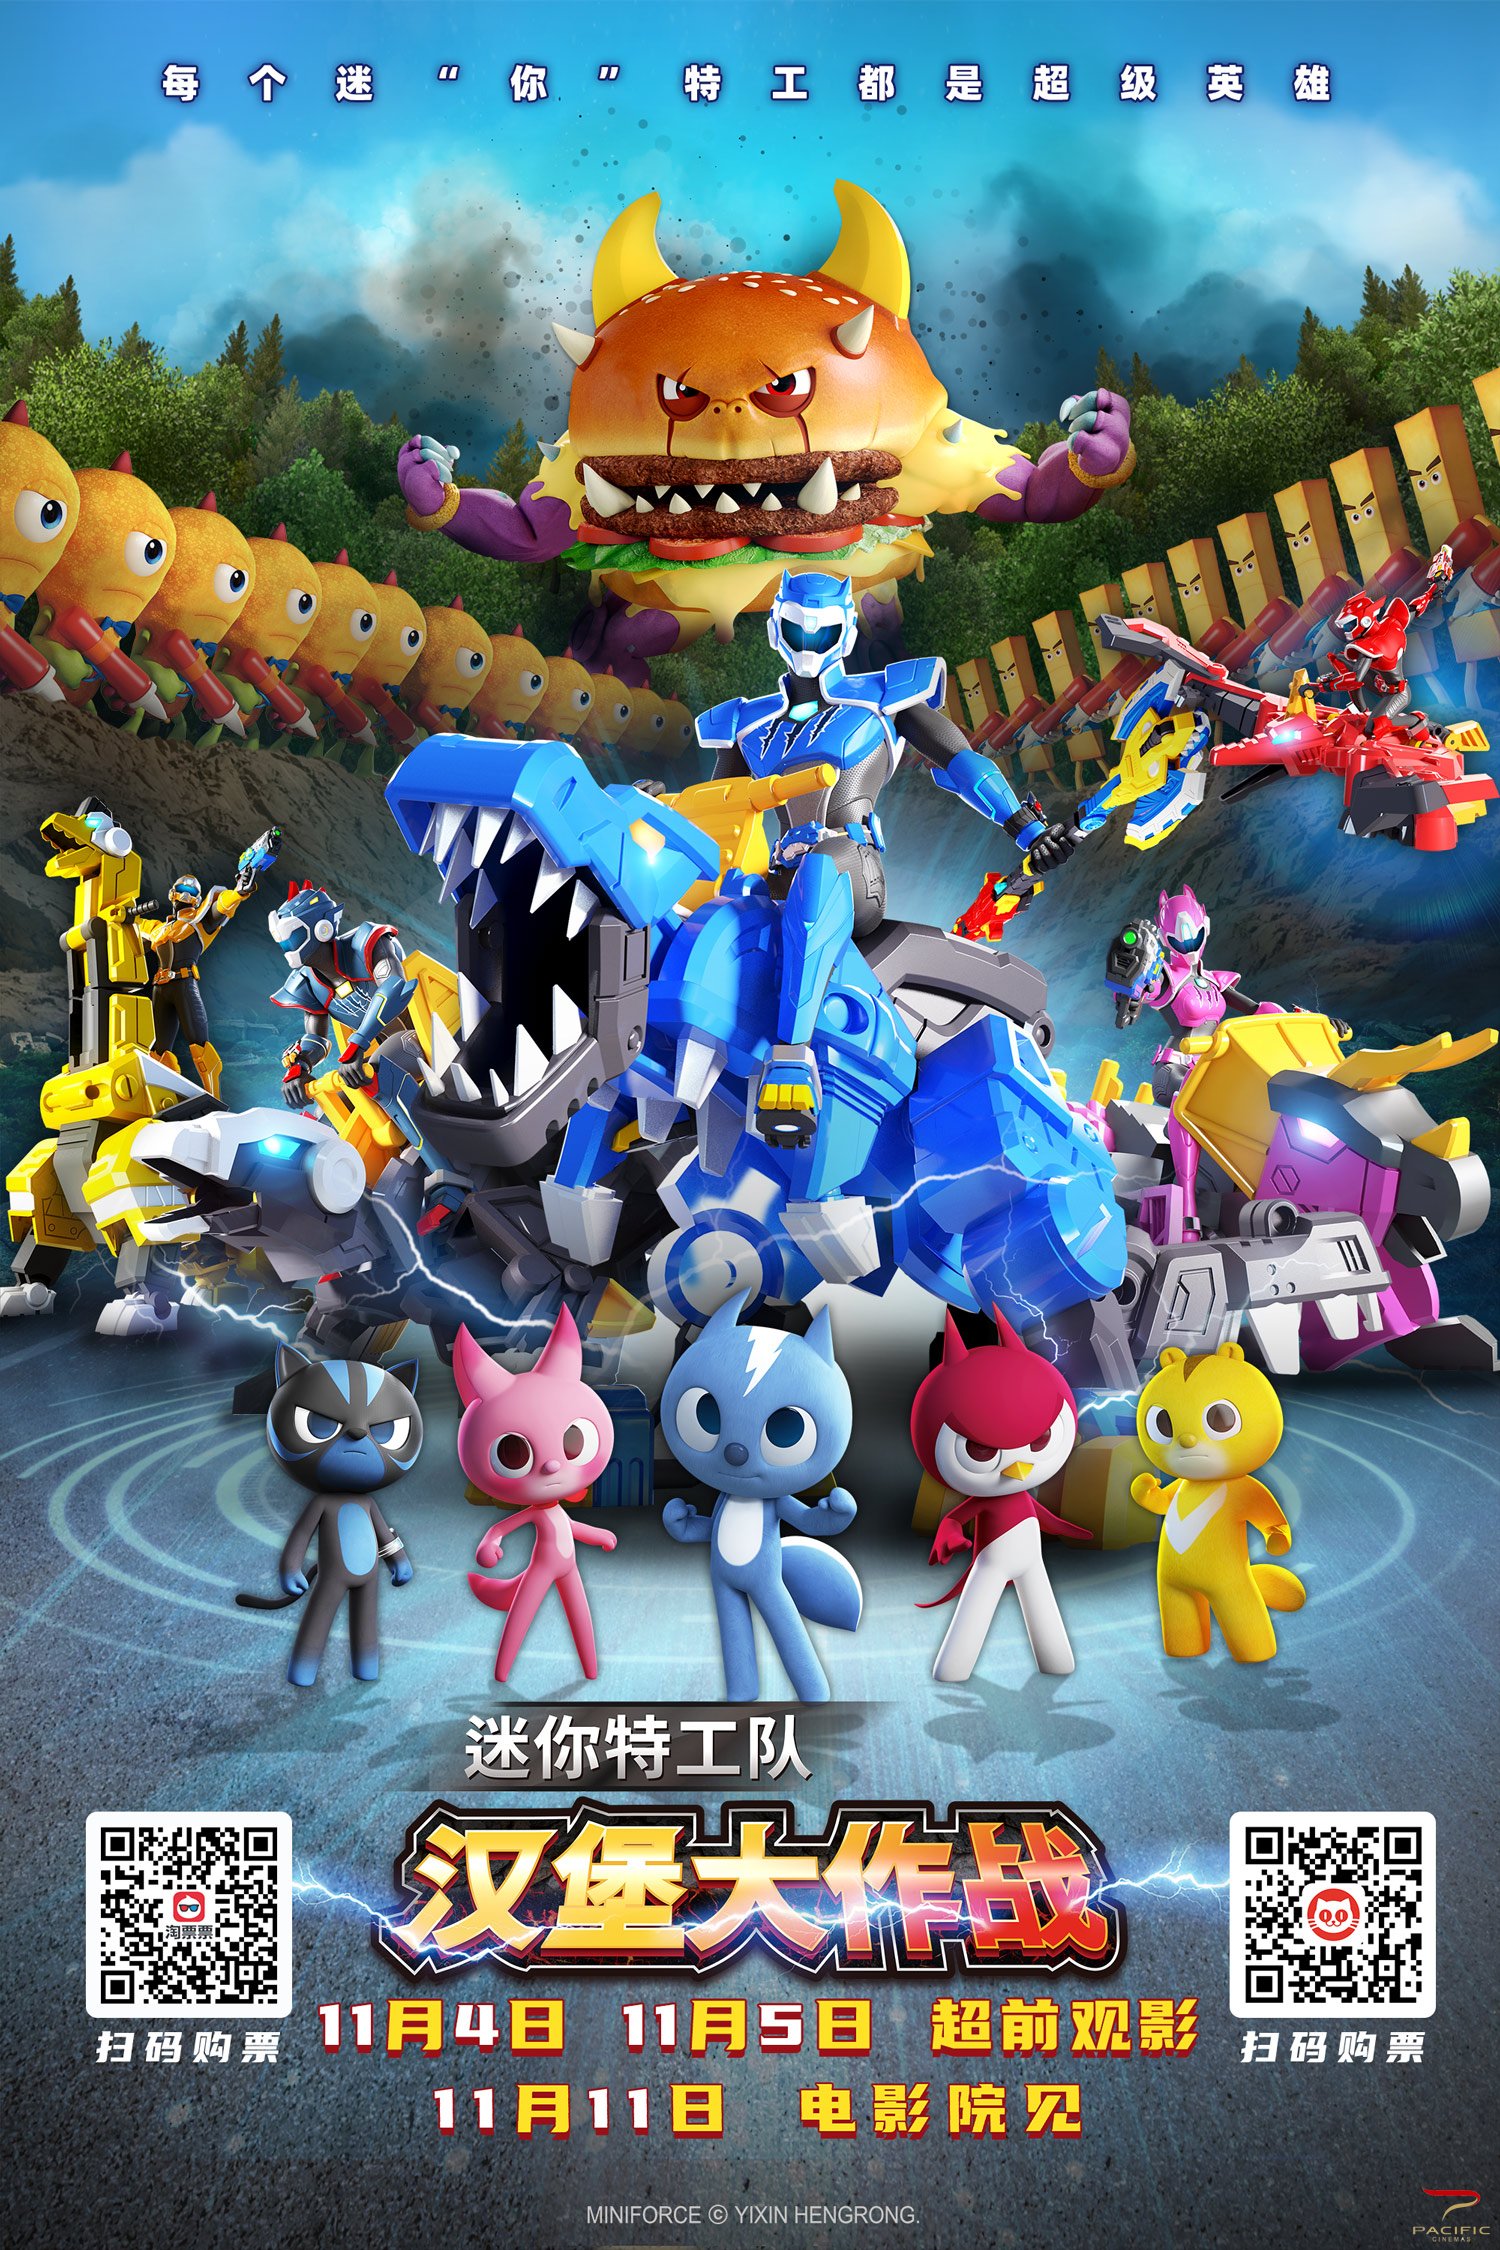 迷你特工队超级恐龙力量2 玩具宣传动画 韩国原版_哔哩哔哩_bilibili